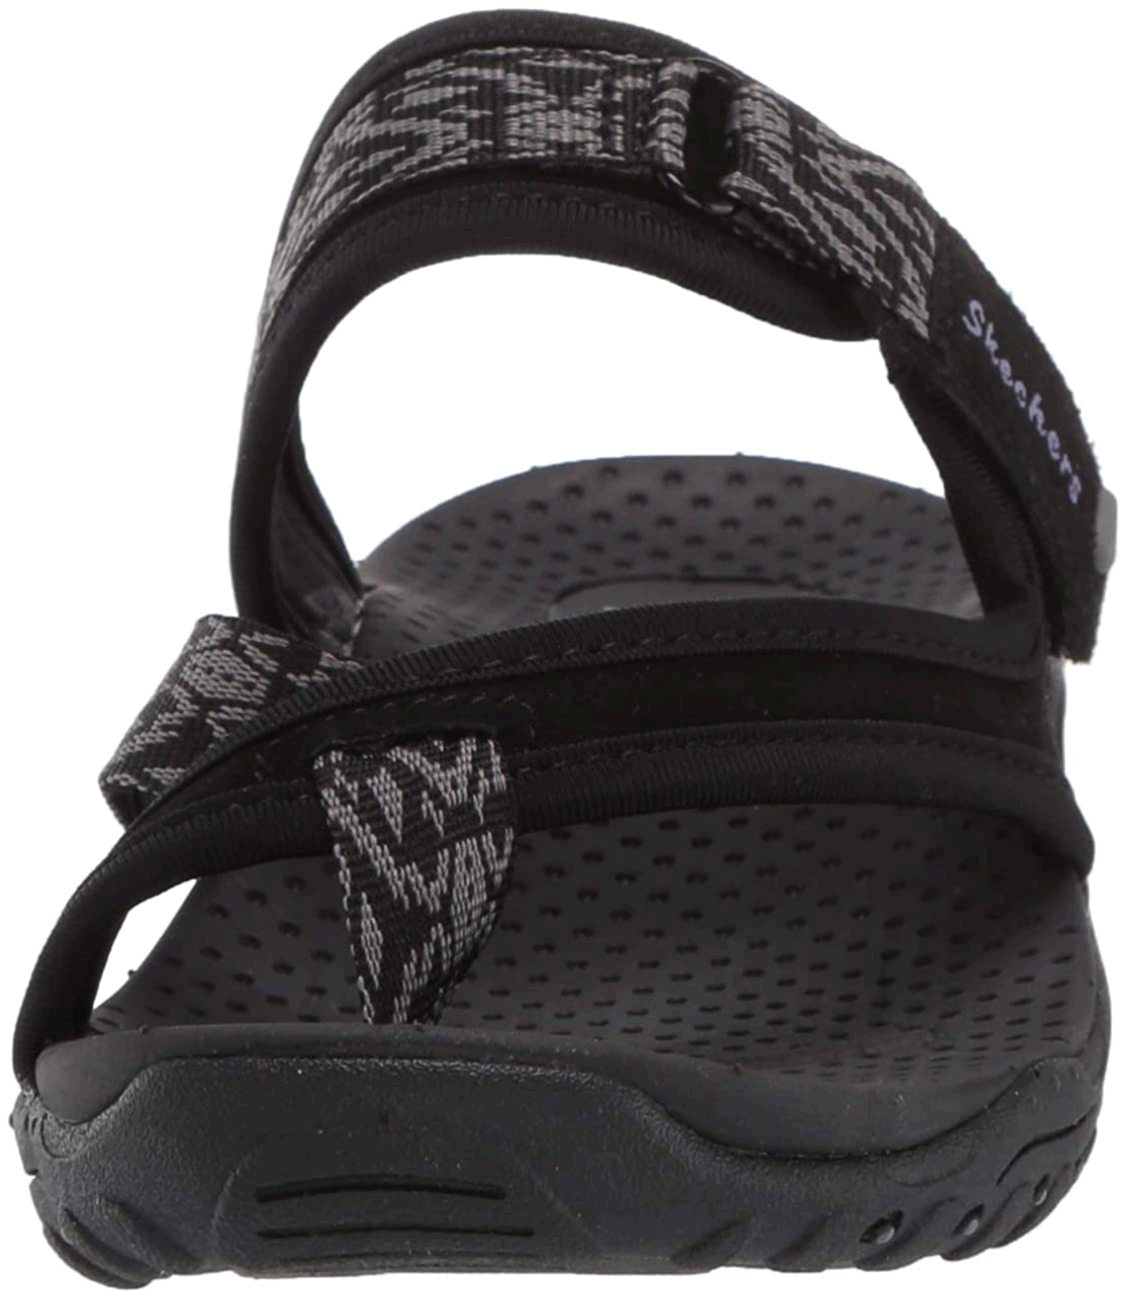 Skechers Women's Flip Flop Thong, Black, Size 8.0 nLRi | eBay